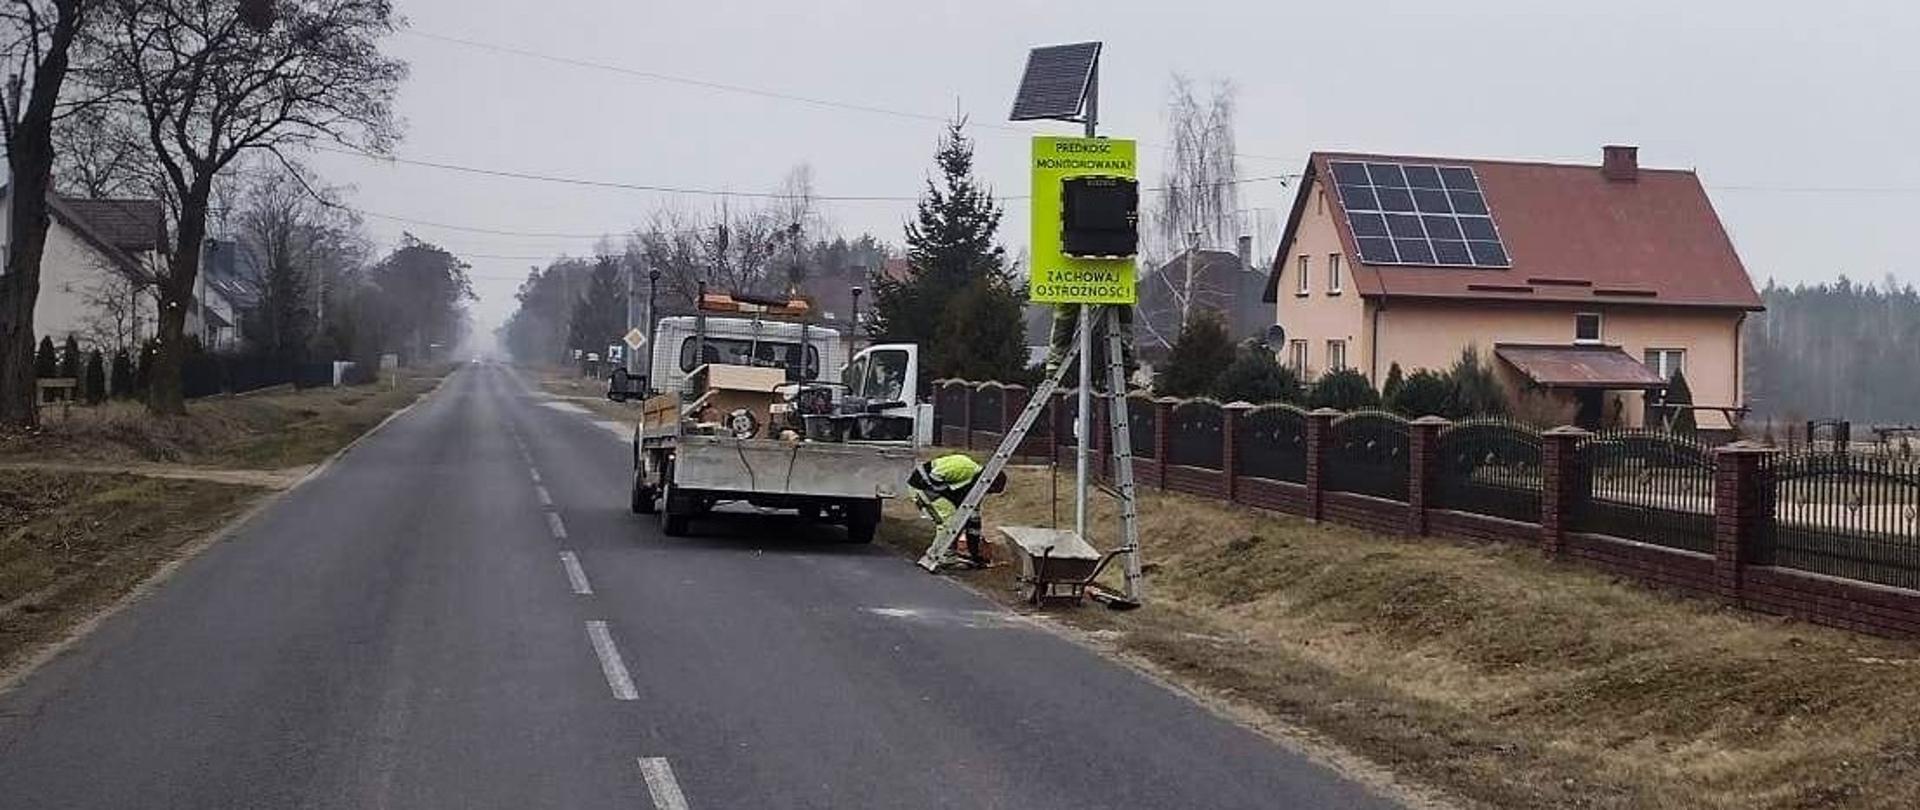 Zrealizowano zadnie pod nazwą "Poprawa bezpieczeństwa w miejscowości Drążdżewo Nowe"